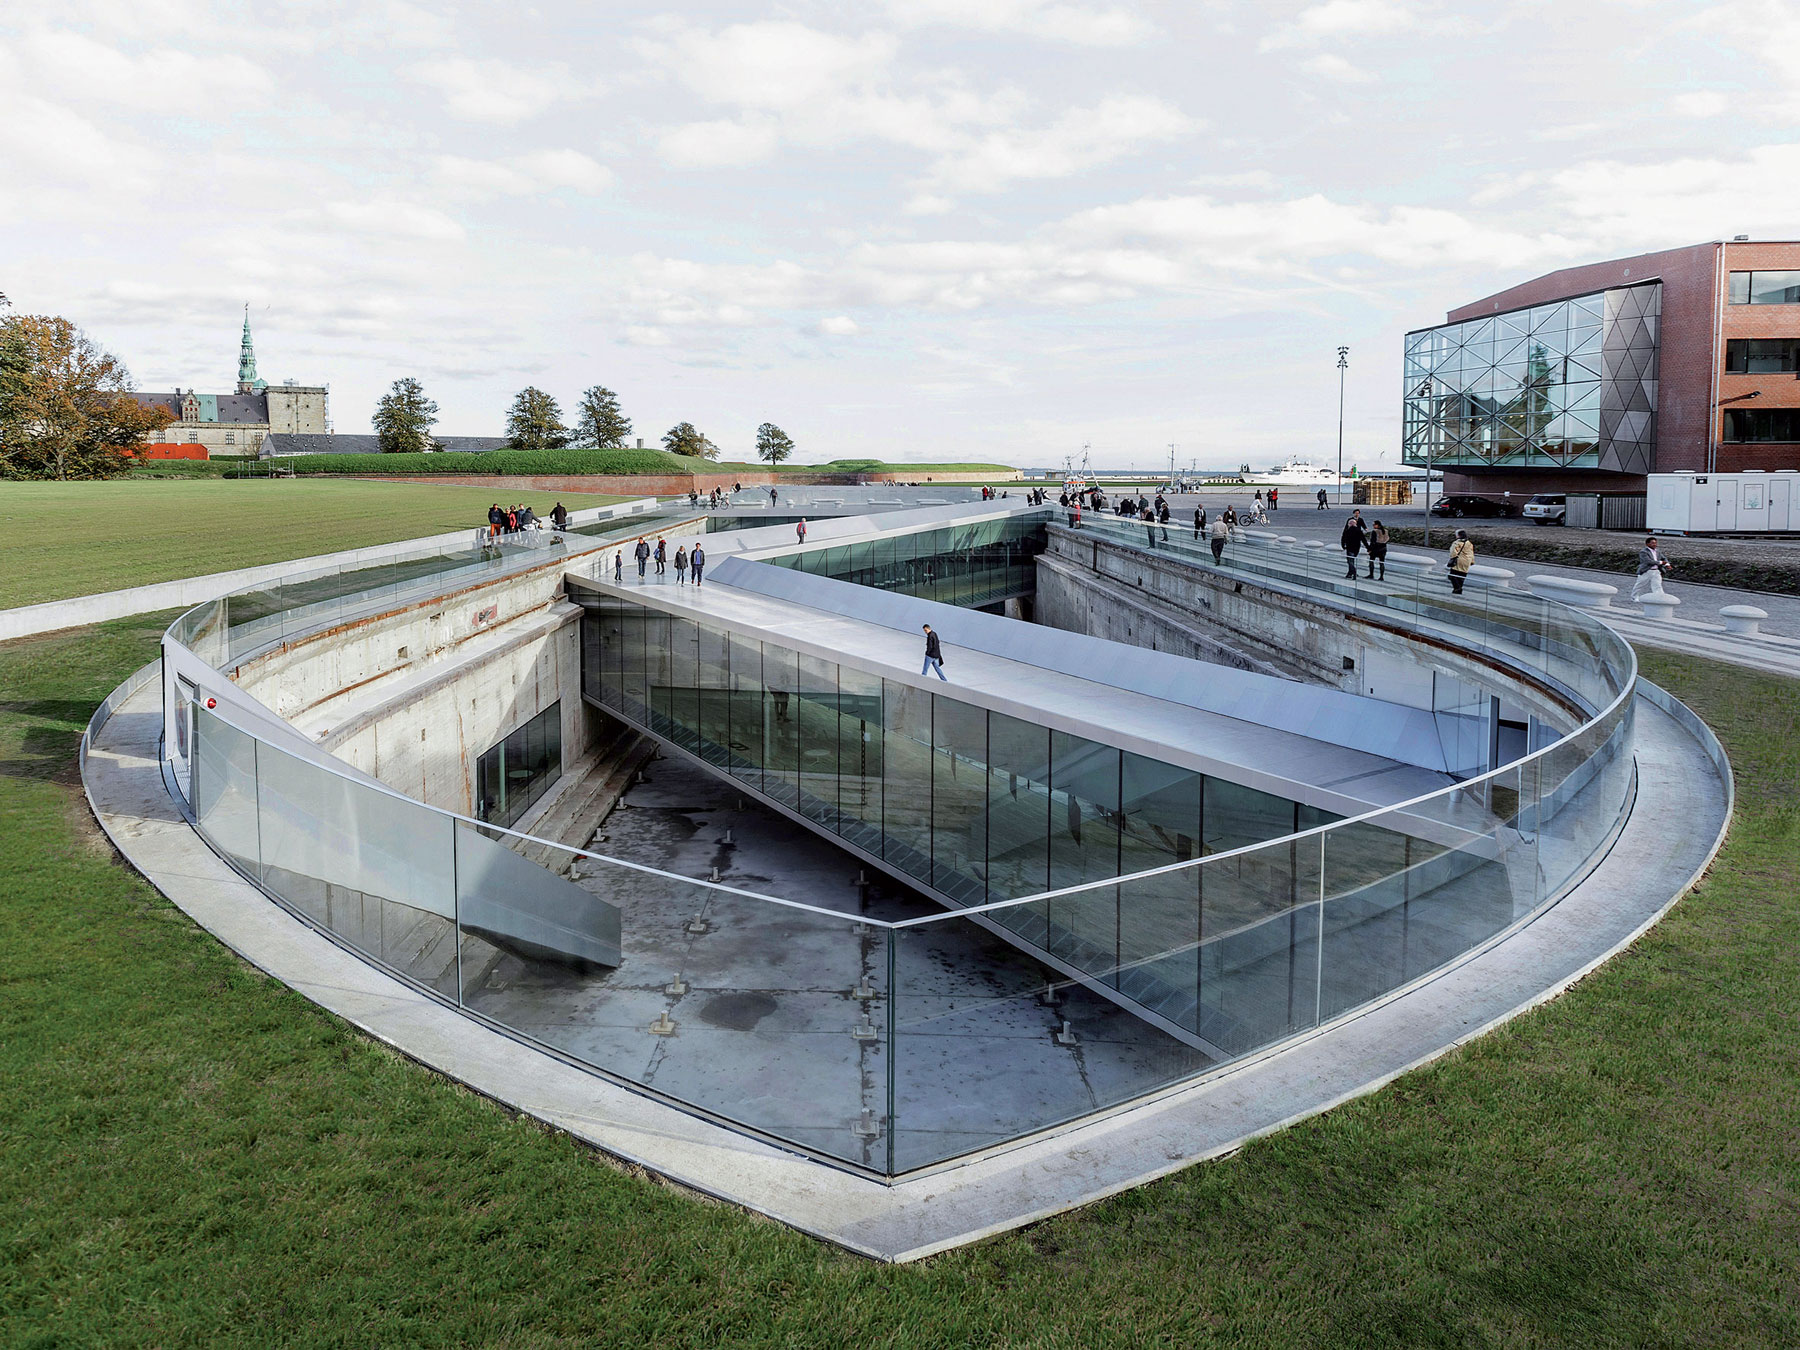 Dánské námořní muzeum v Helsingo/ru, se stalo finalistou soutěže Mies van der Rohe Award 2015, foto: Rasmus Hjortshoj